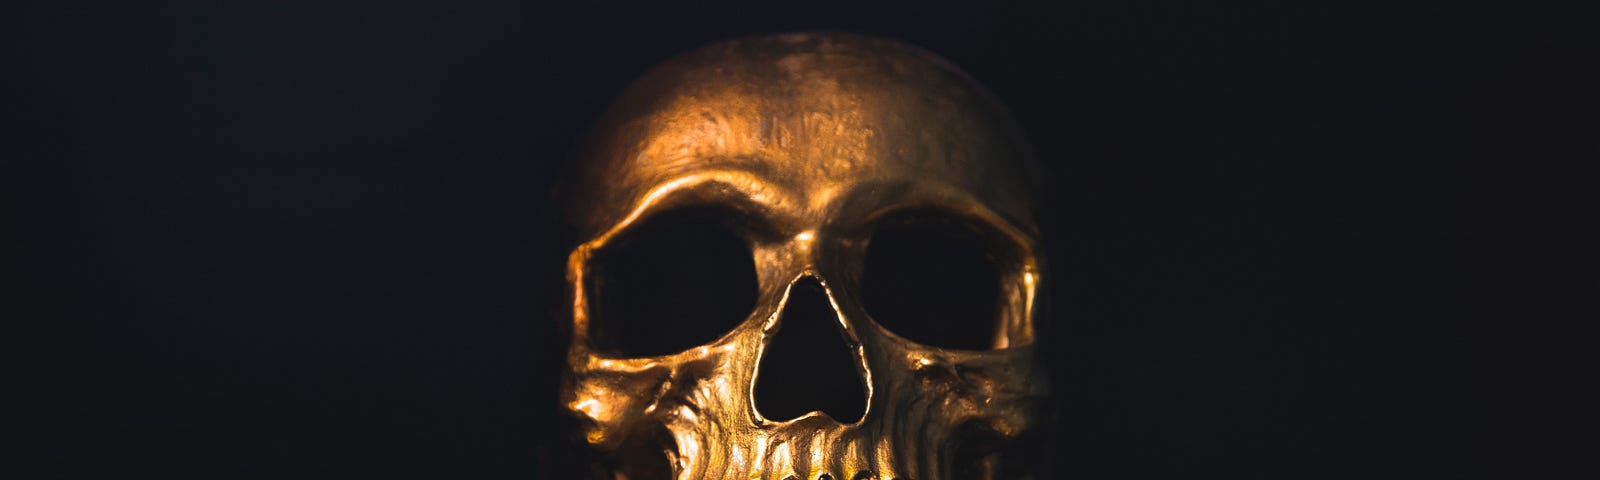 Golden Skull Photo by Luke Southern on Unsplash